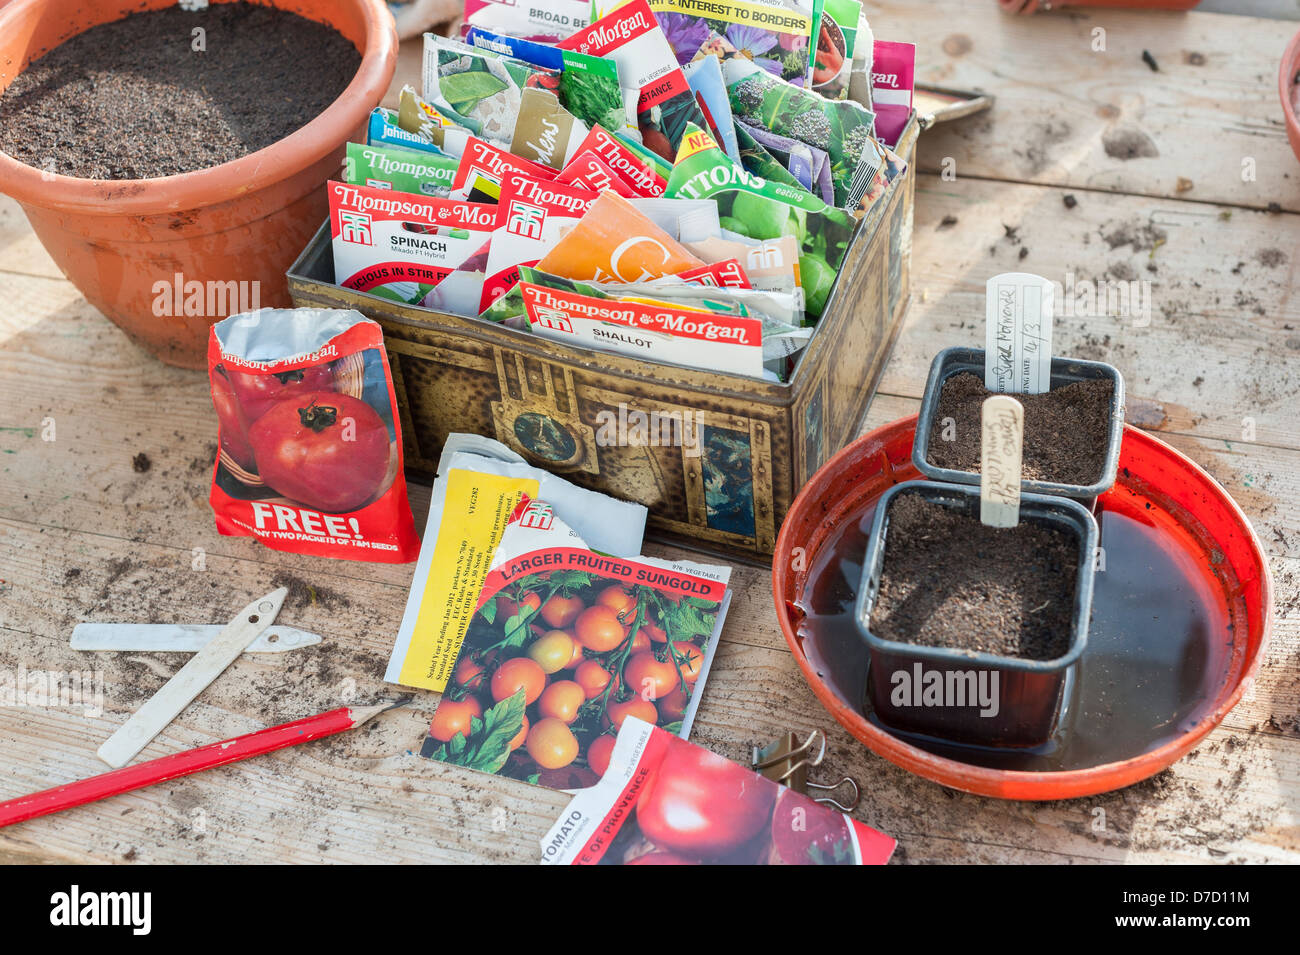 Primavera banco di incapsulazione con pacchetti di sementi e di fresco di sementi seminate in vasi di essere imbevuti nel vassoio, Foto Stock